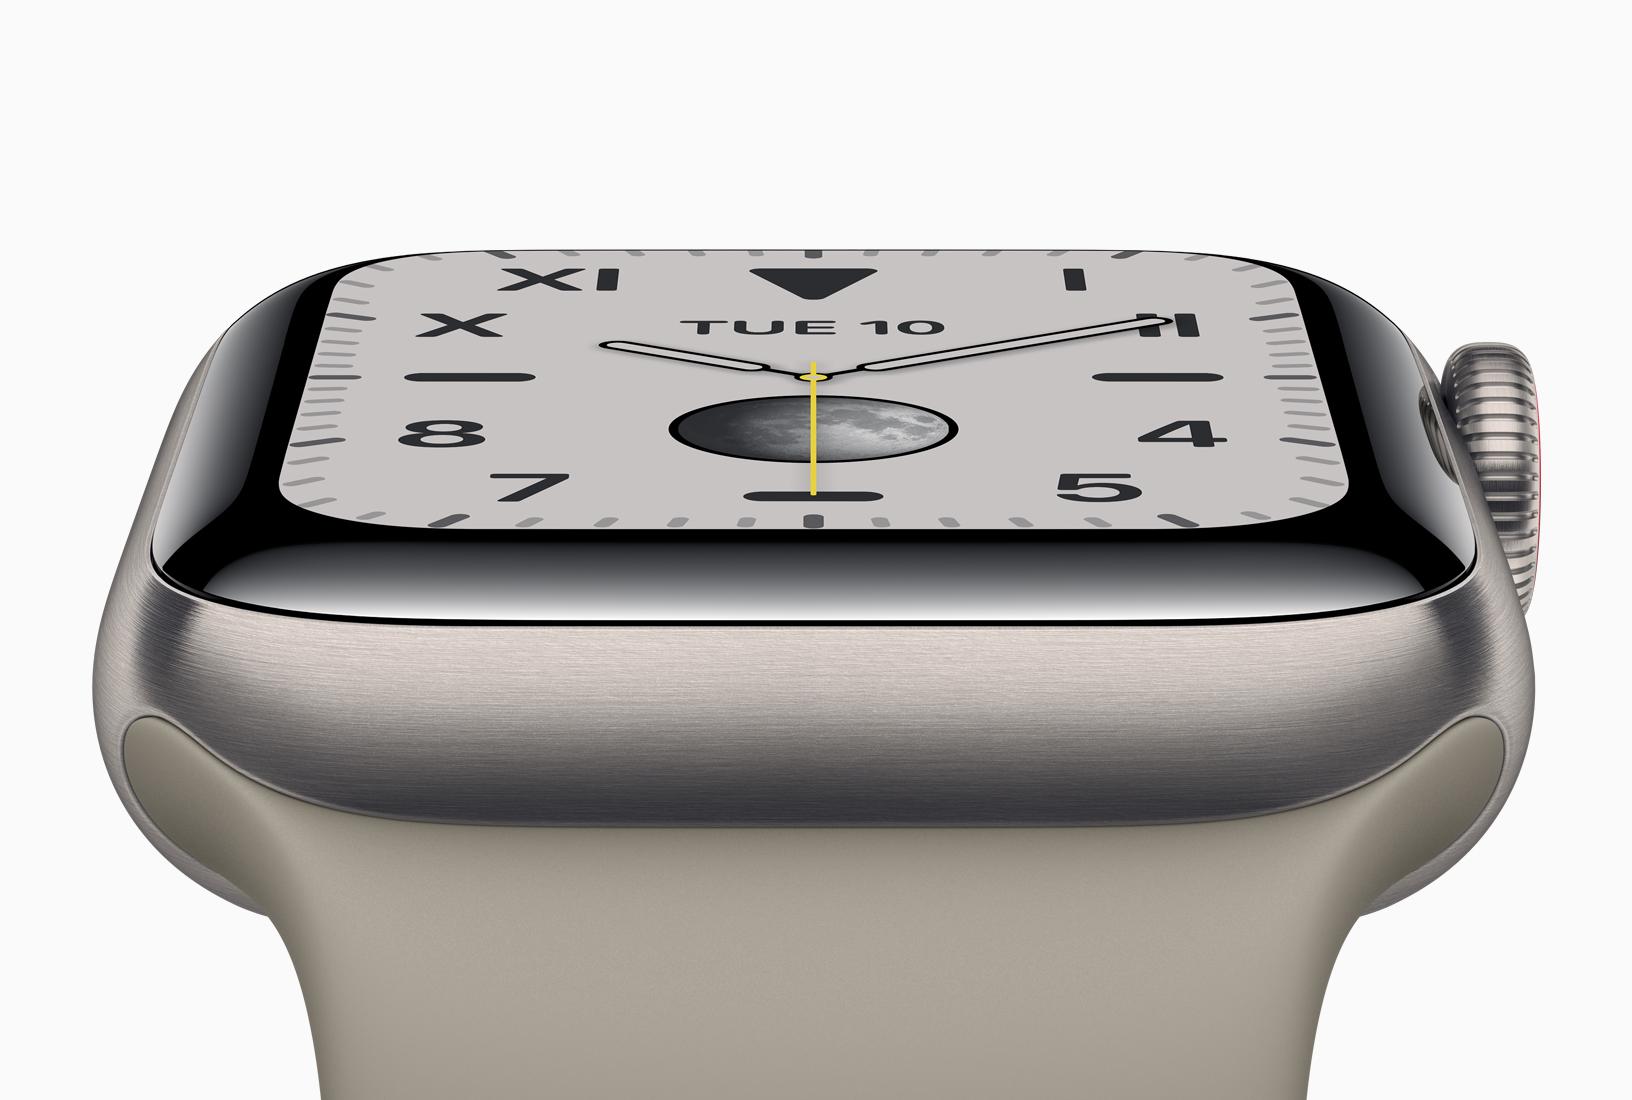 苹果2019 年新款Apple Watch Series 5/S5/S3 购买攻略】划重点！ - 知乎